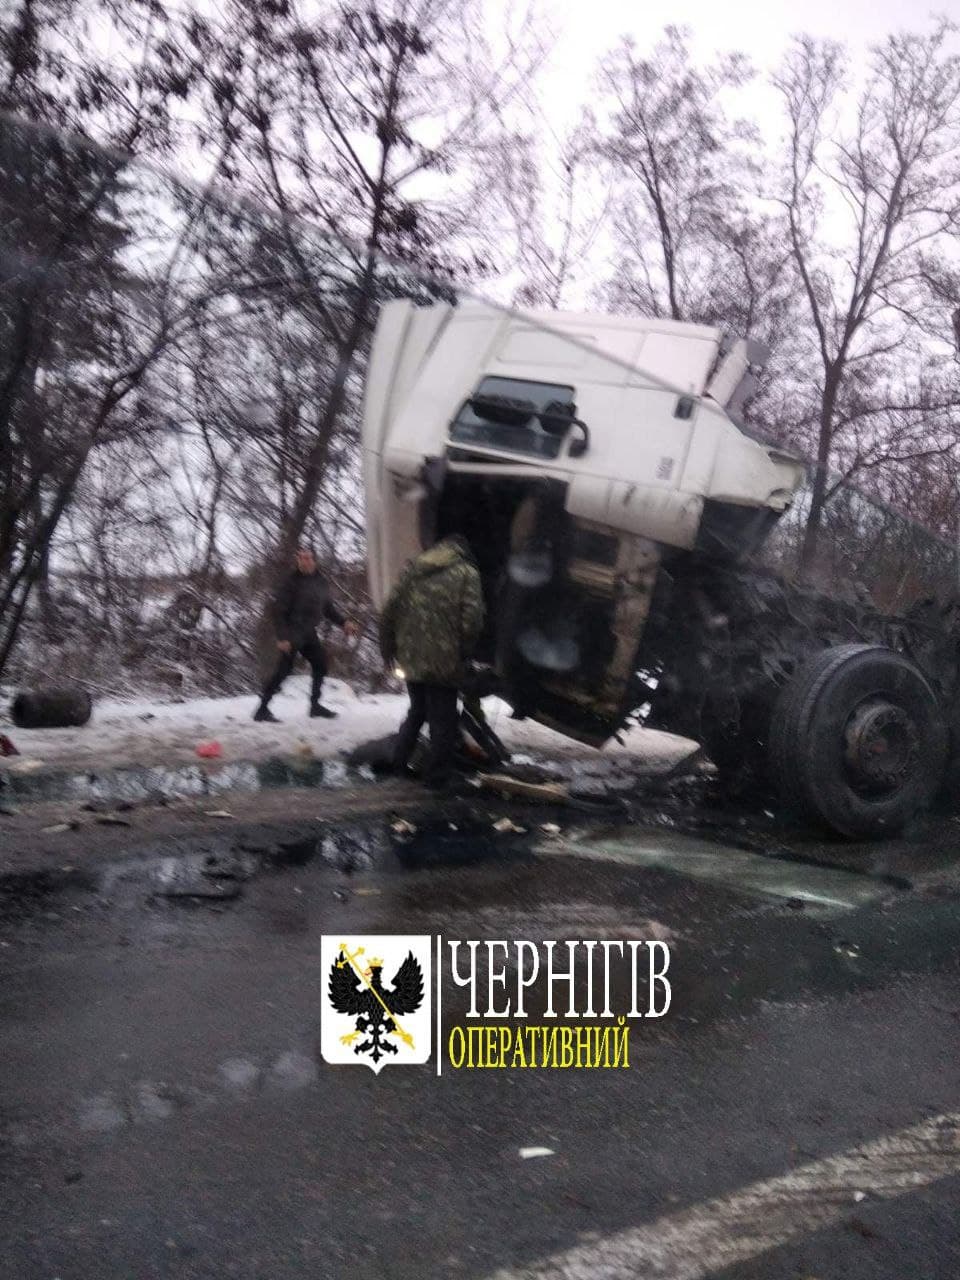 Моторошна ДТП на Чернігівщині: загинули 10 пасажирів маршрутки (Фото 18+. ОНОВЛЕНО)